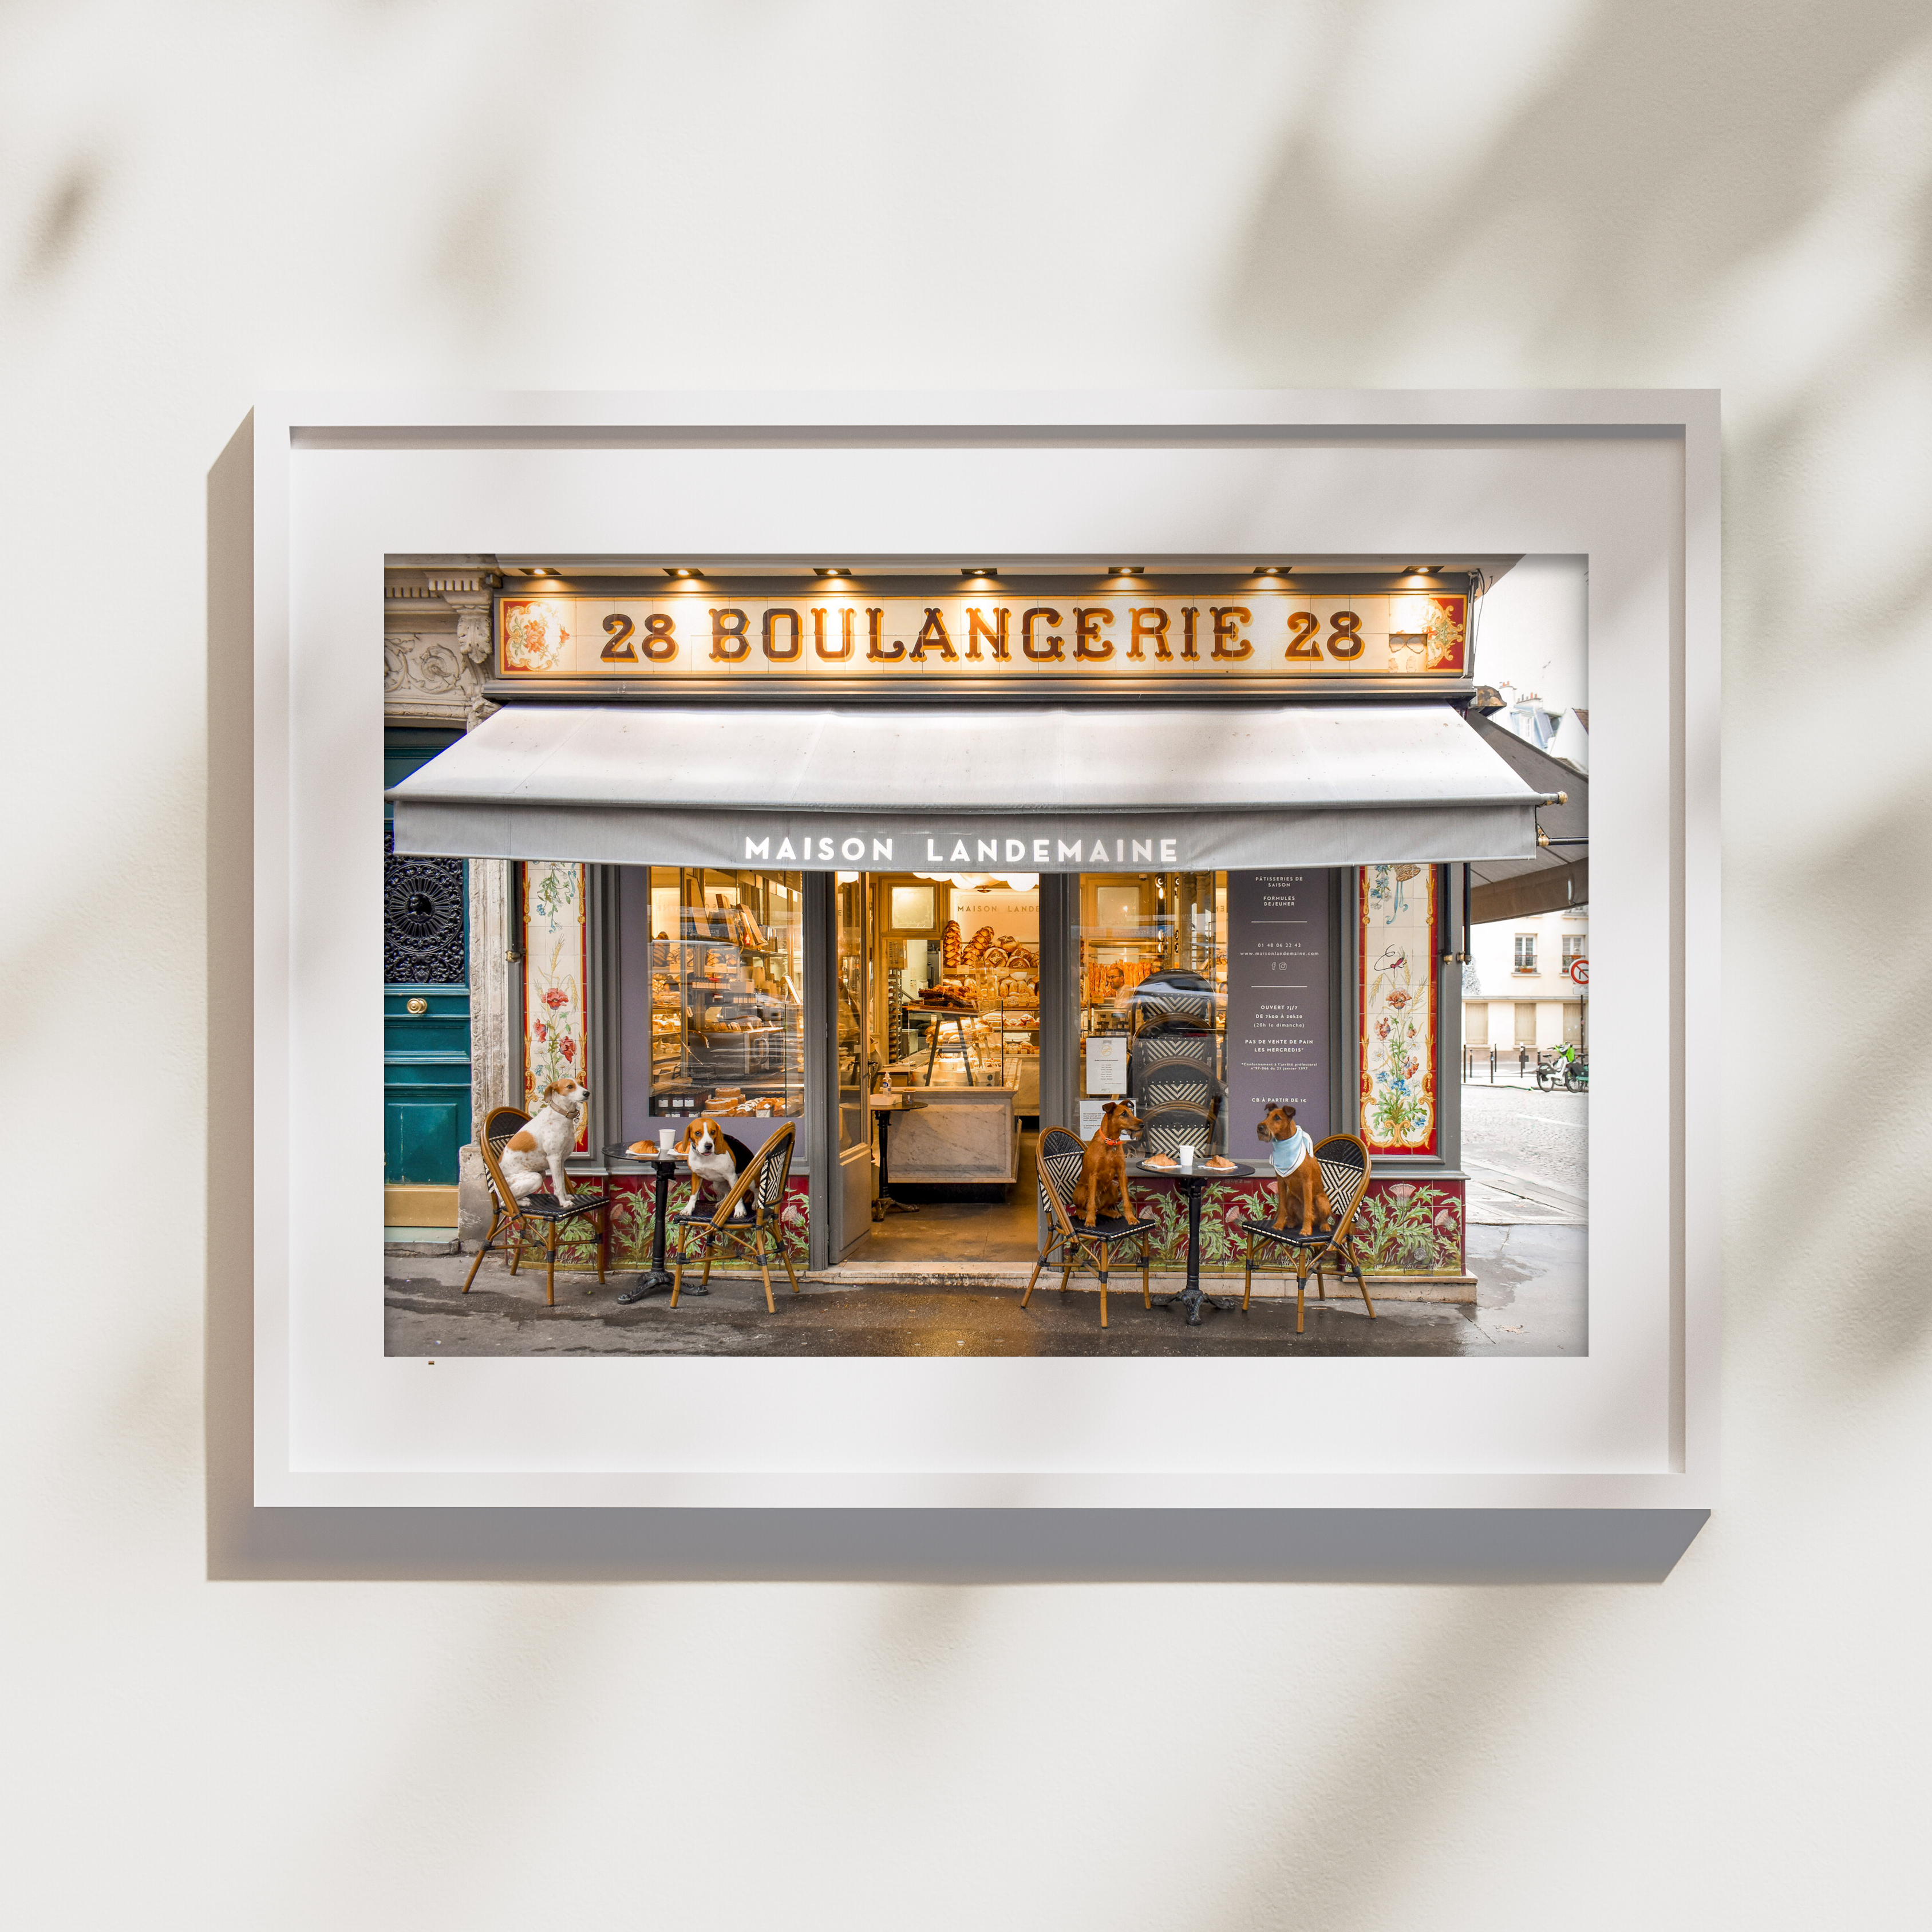 boulangerie in paris photo framed